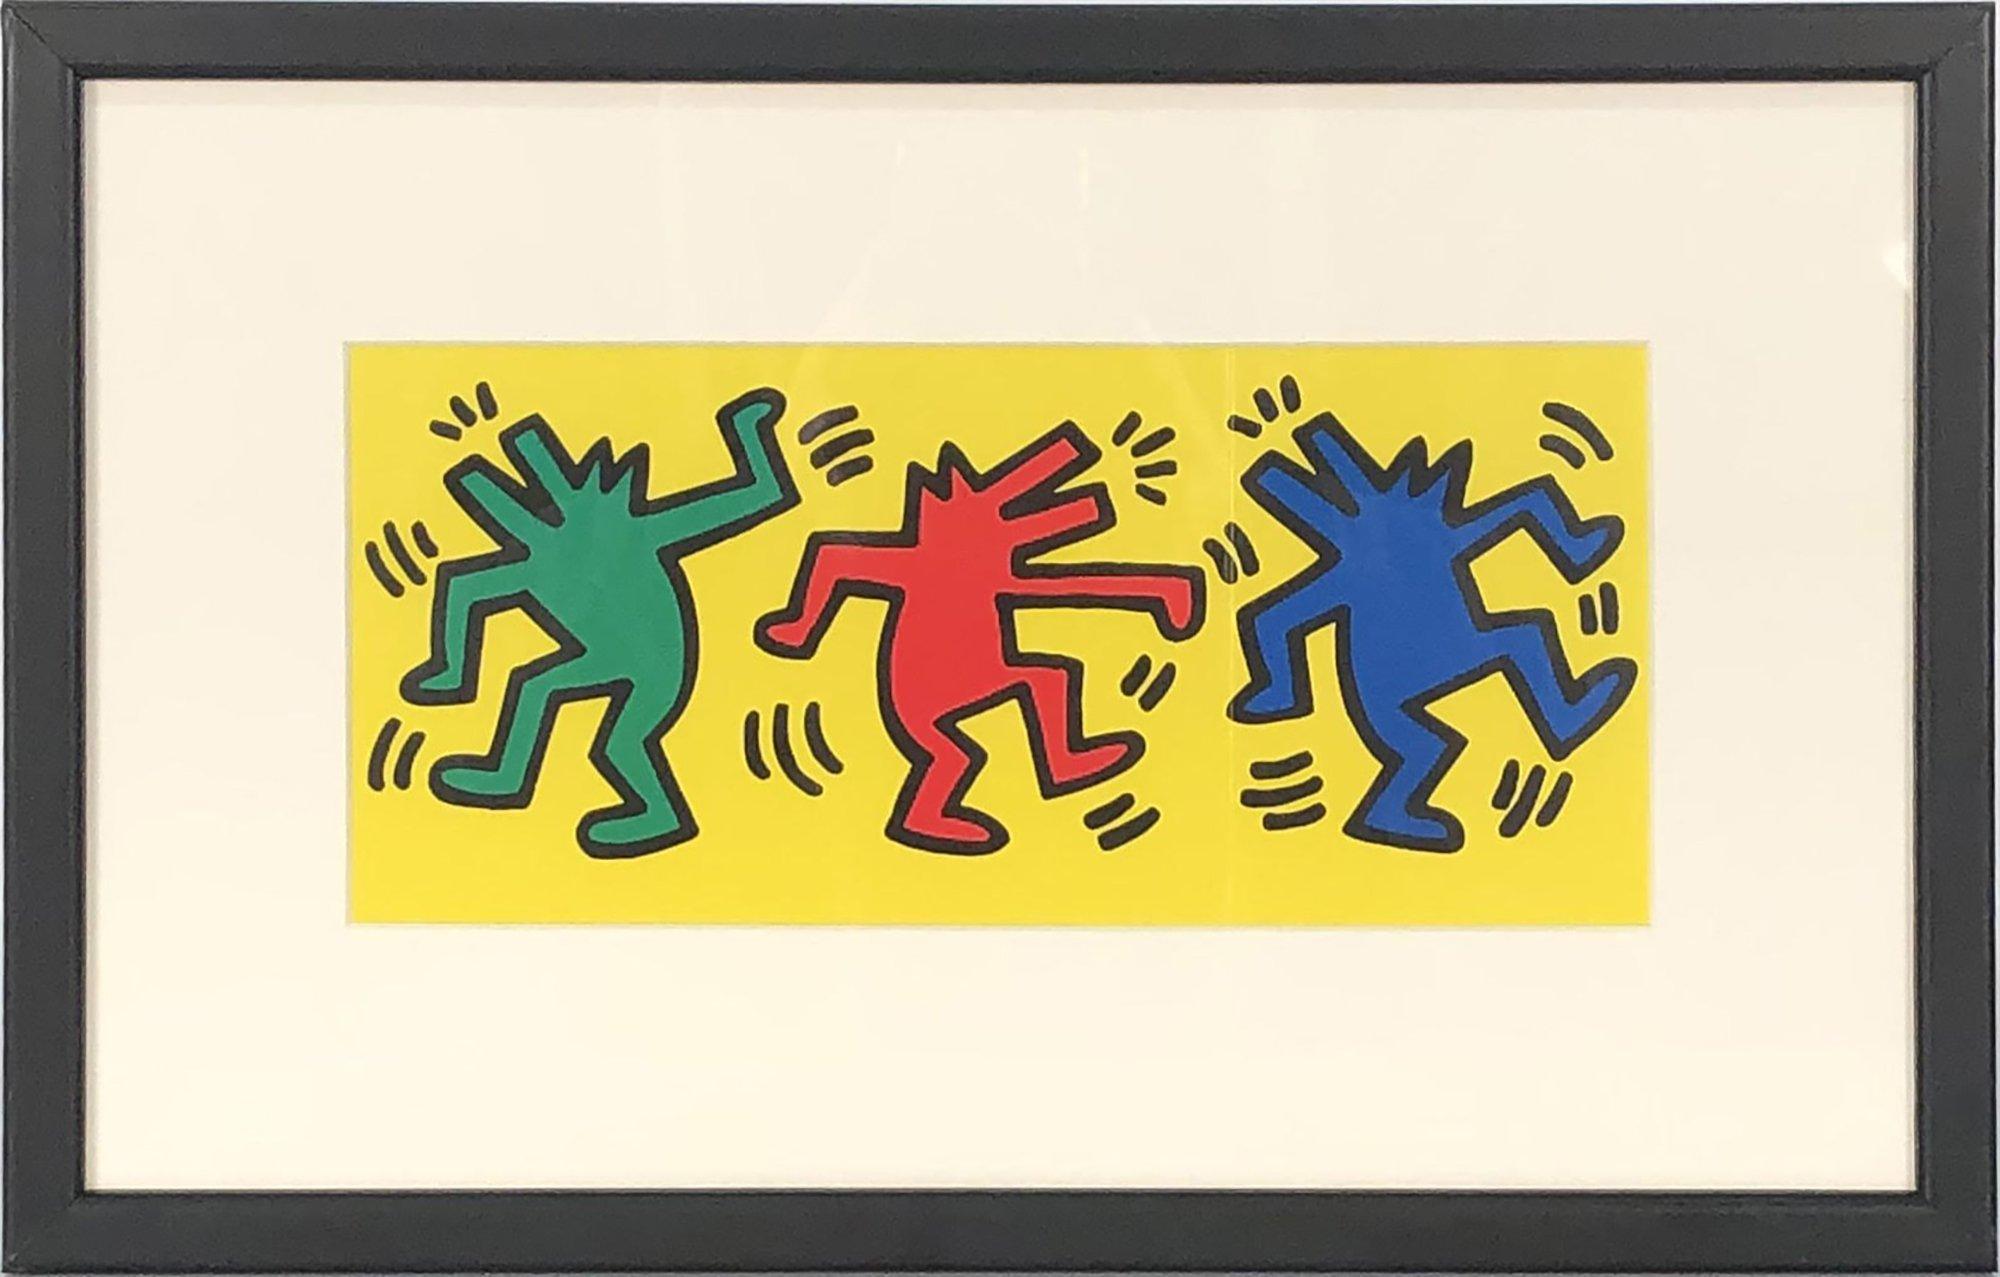 Papierformat: 9 x 14,25 Zoll (22,86 x 36,195 cm)
 Bildgröße: 4 x 9,5 Zoll (10,16 x 24,13 cm)
 Gerahmt: Ja
 Zustand: A-: Fast neuwertig, sehr leichte Gebrauchsspuren
 
 Zusätzliche Details: Vintage Keith Haring Postkarte Estate Authorized 1998 Fold